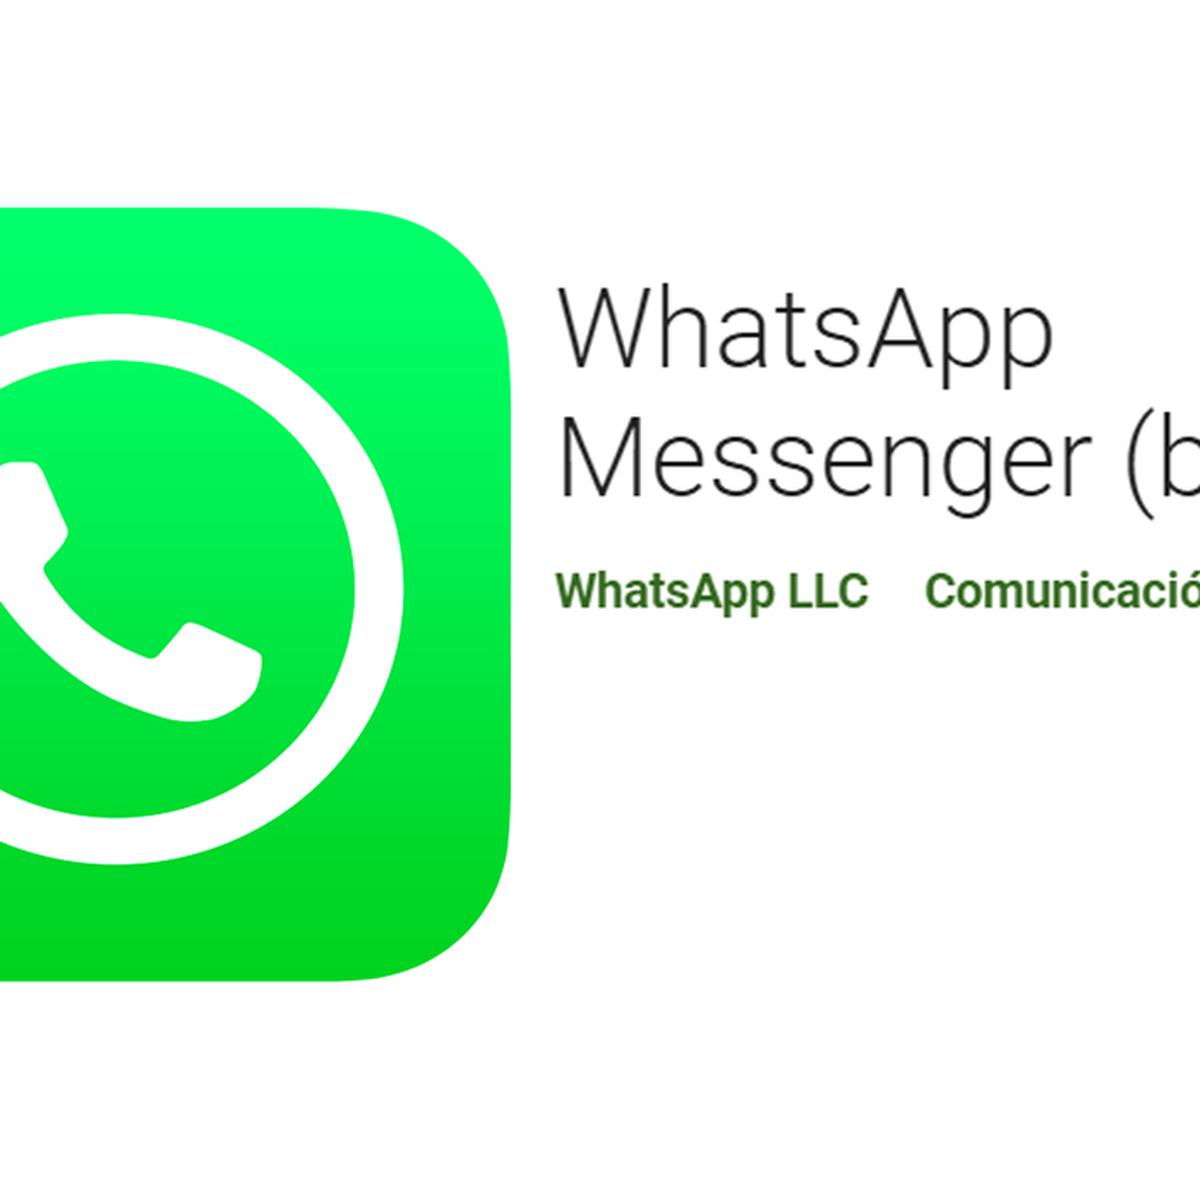 Cómo acceder a la beta de WhatsApp de forma sencilla y probar las